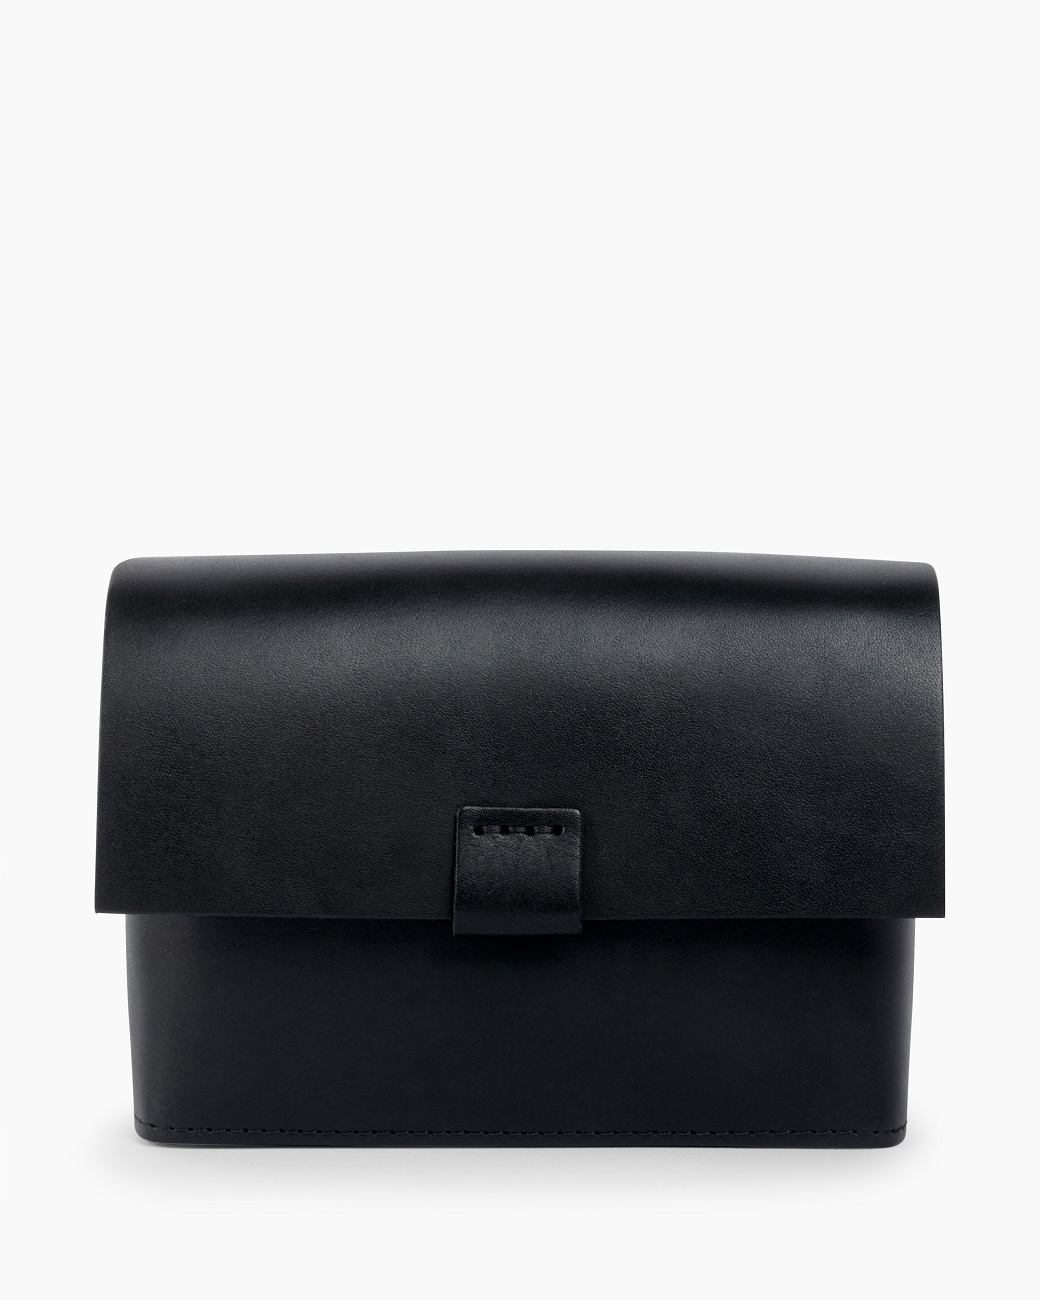 Женская поясная сумка из натуральной кожи черная A0041